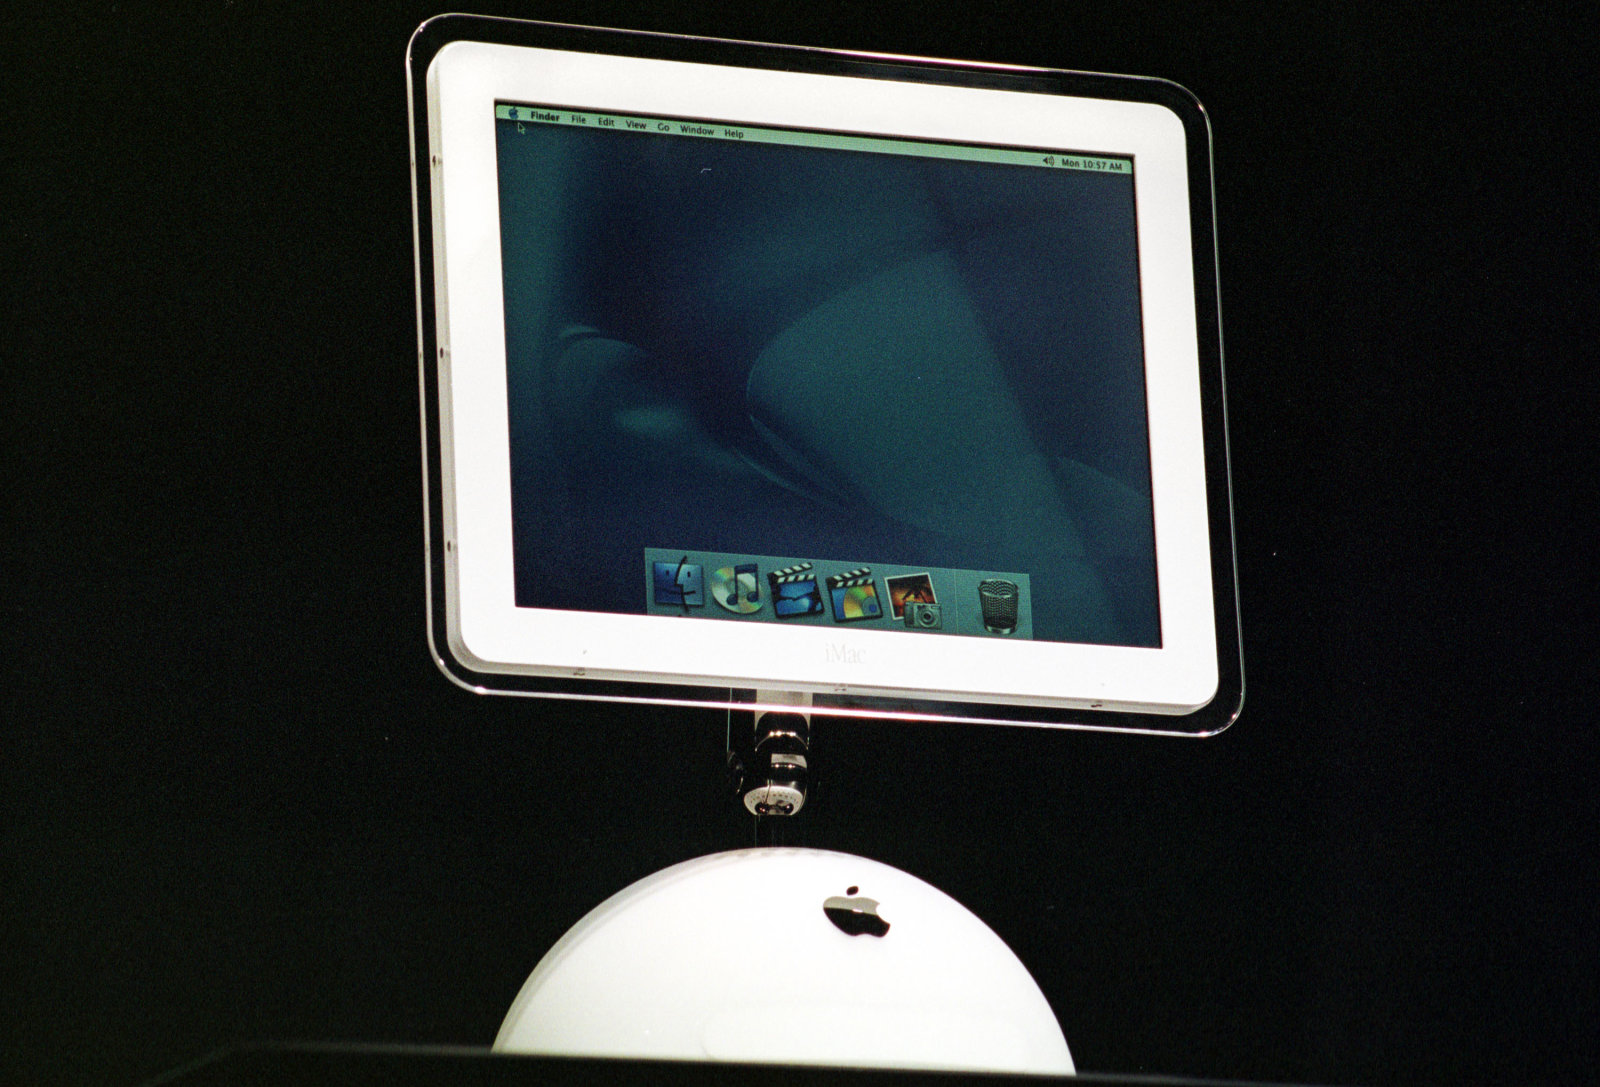 New iMac Introduced at Macworld